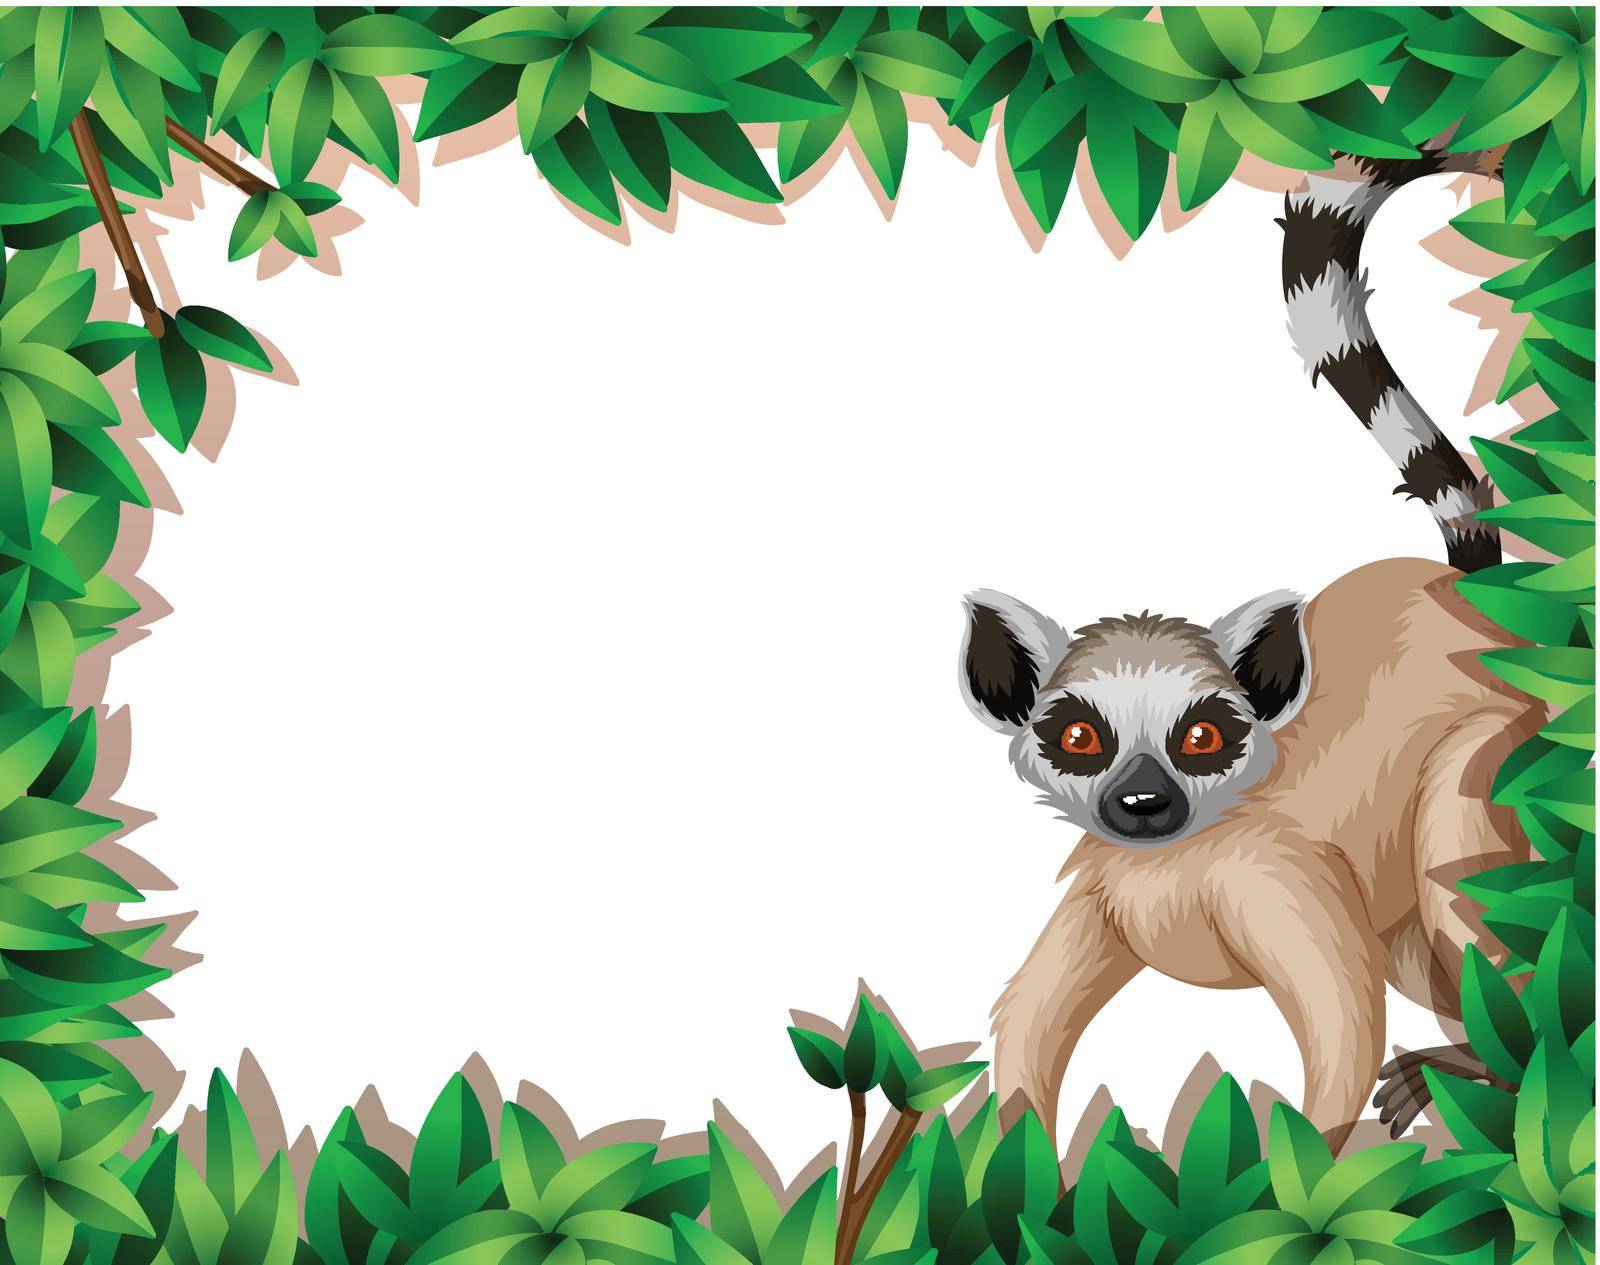 Lemur in nature frame illustration